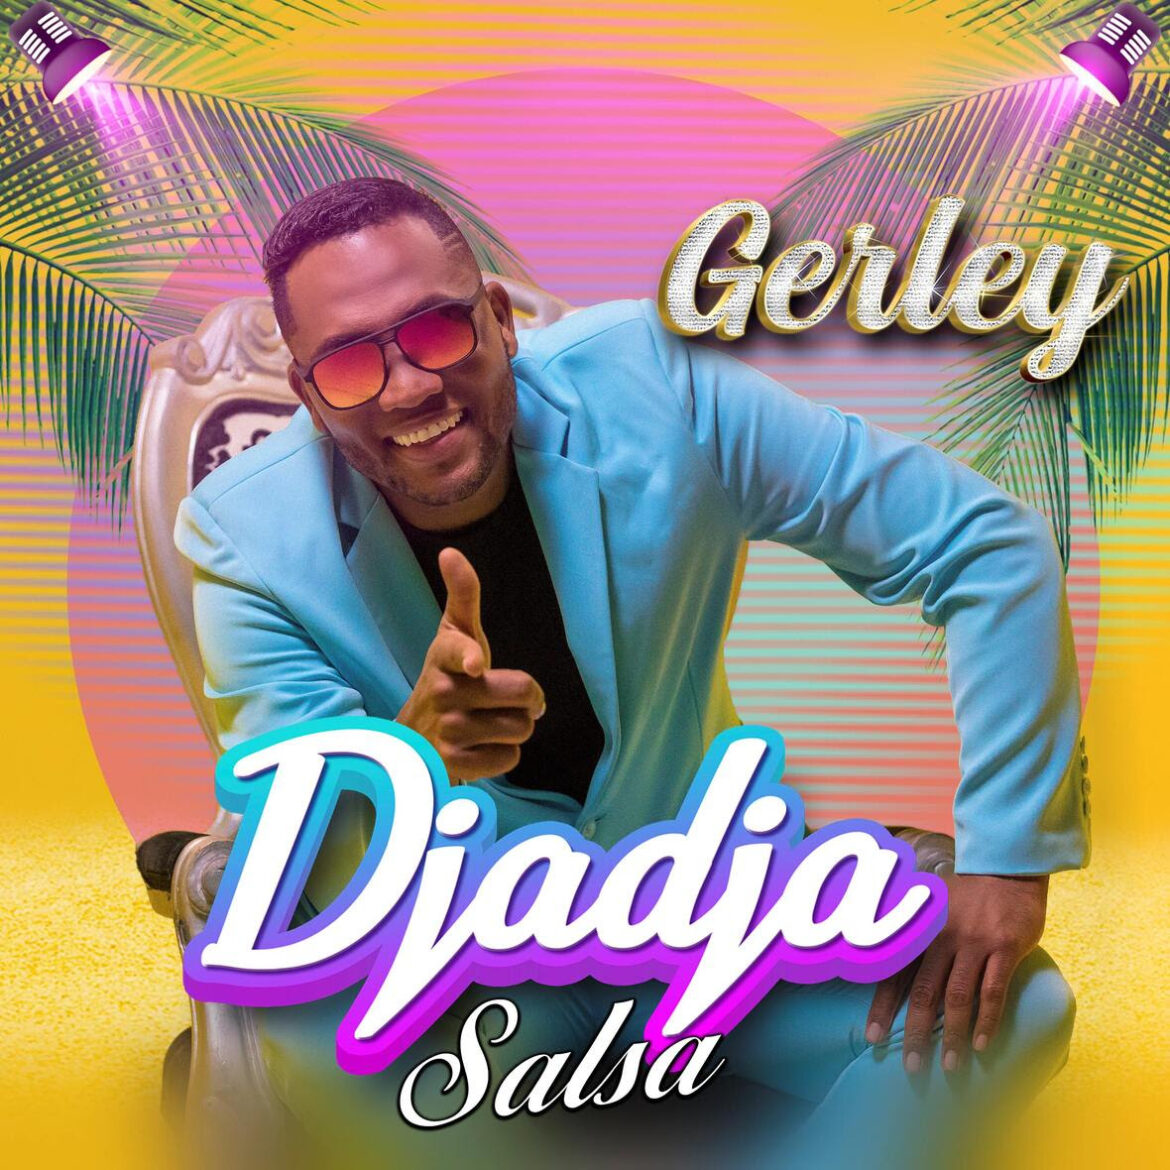 Gerley presenta nuevo sencillo “DJADJA”